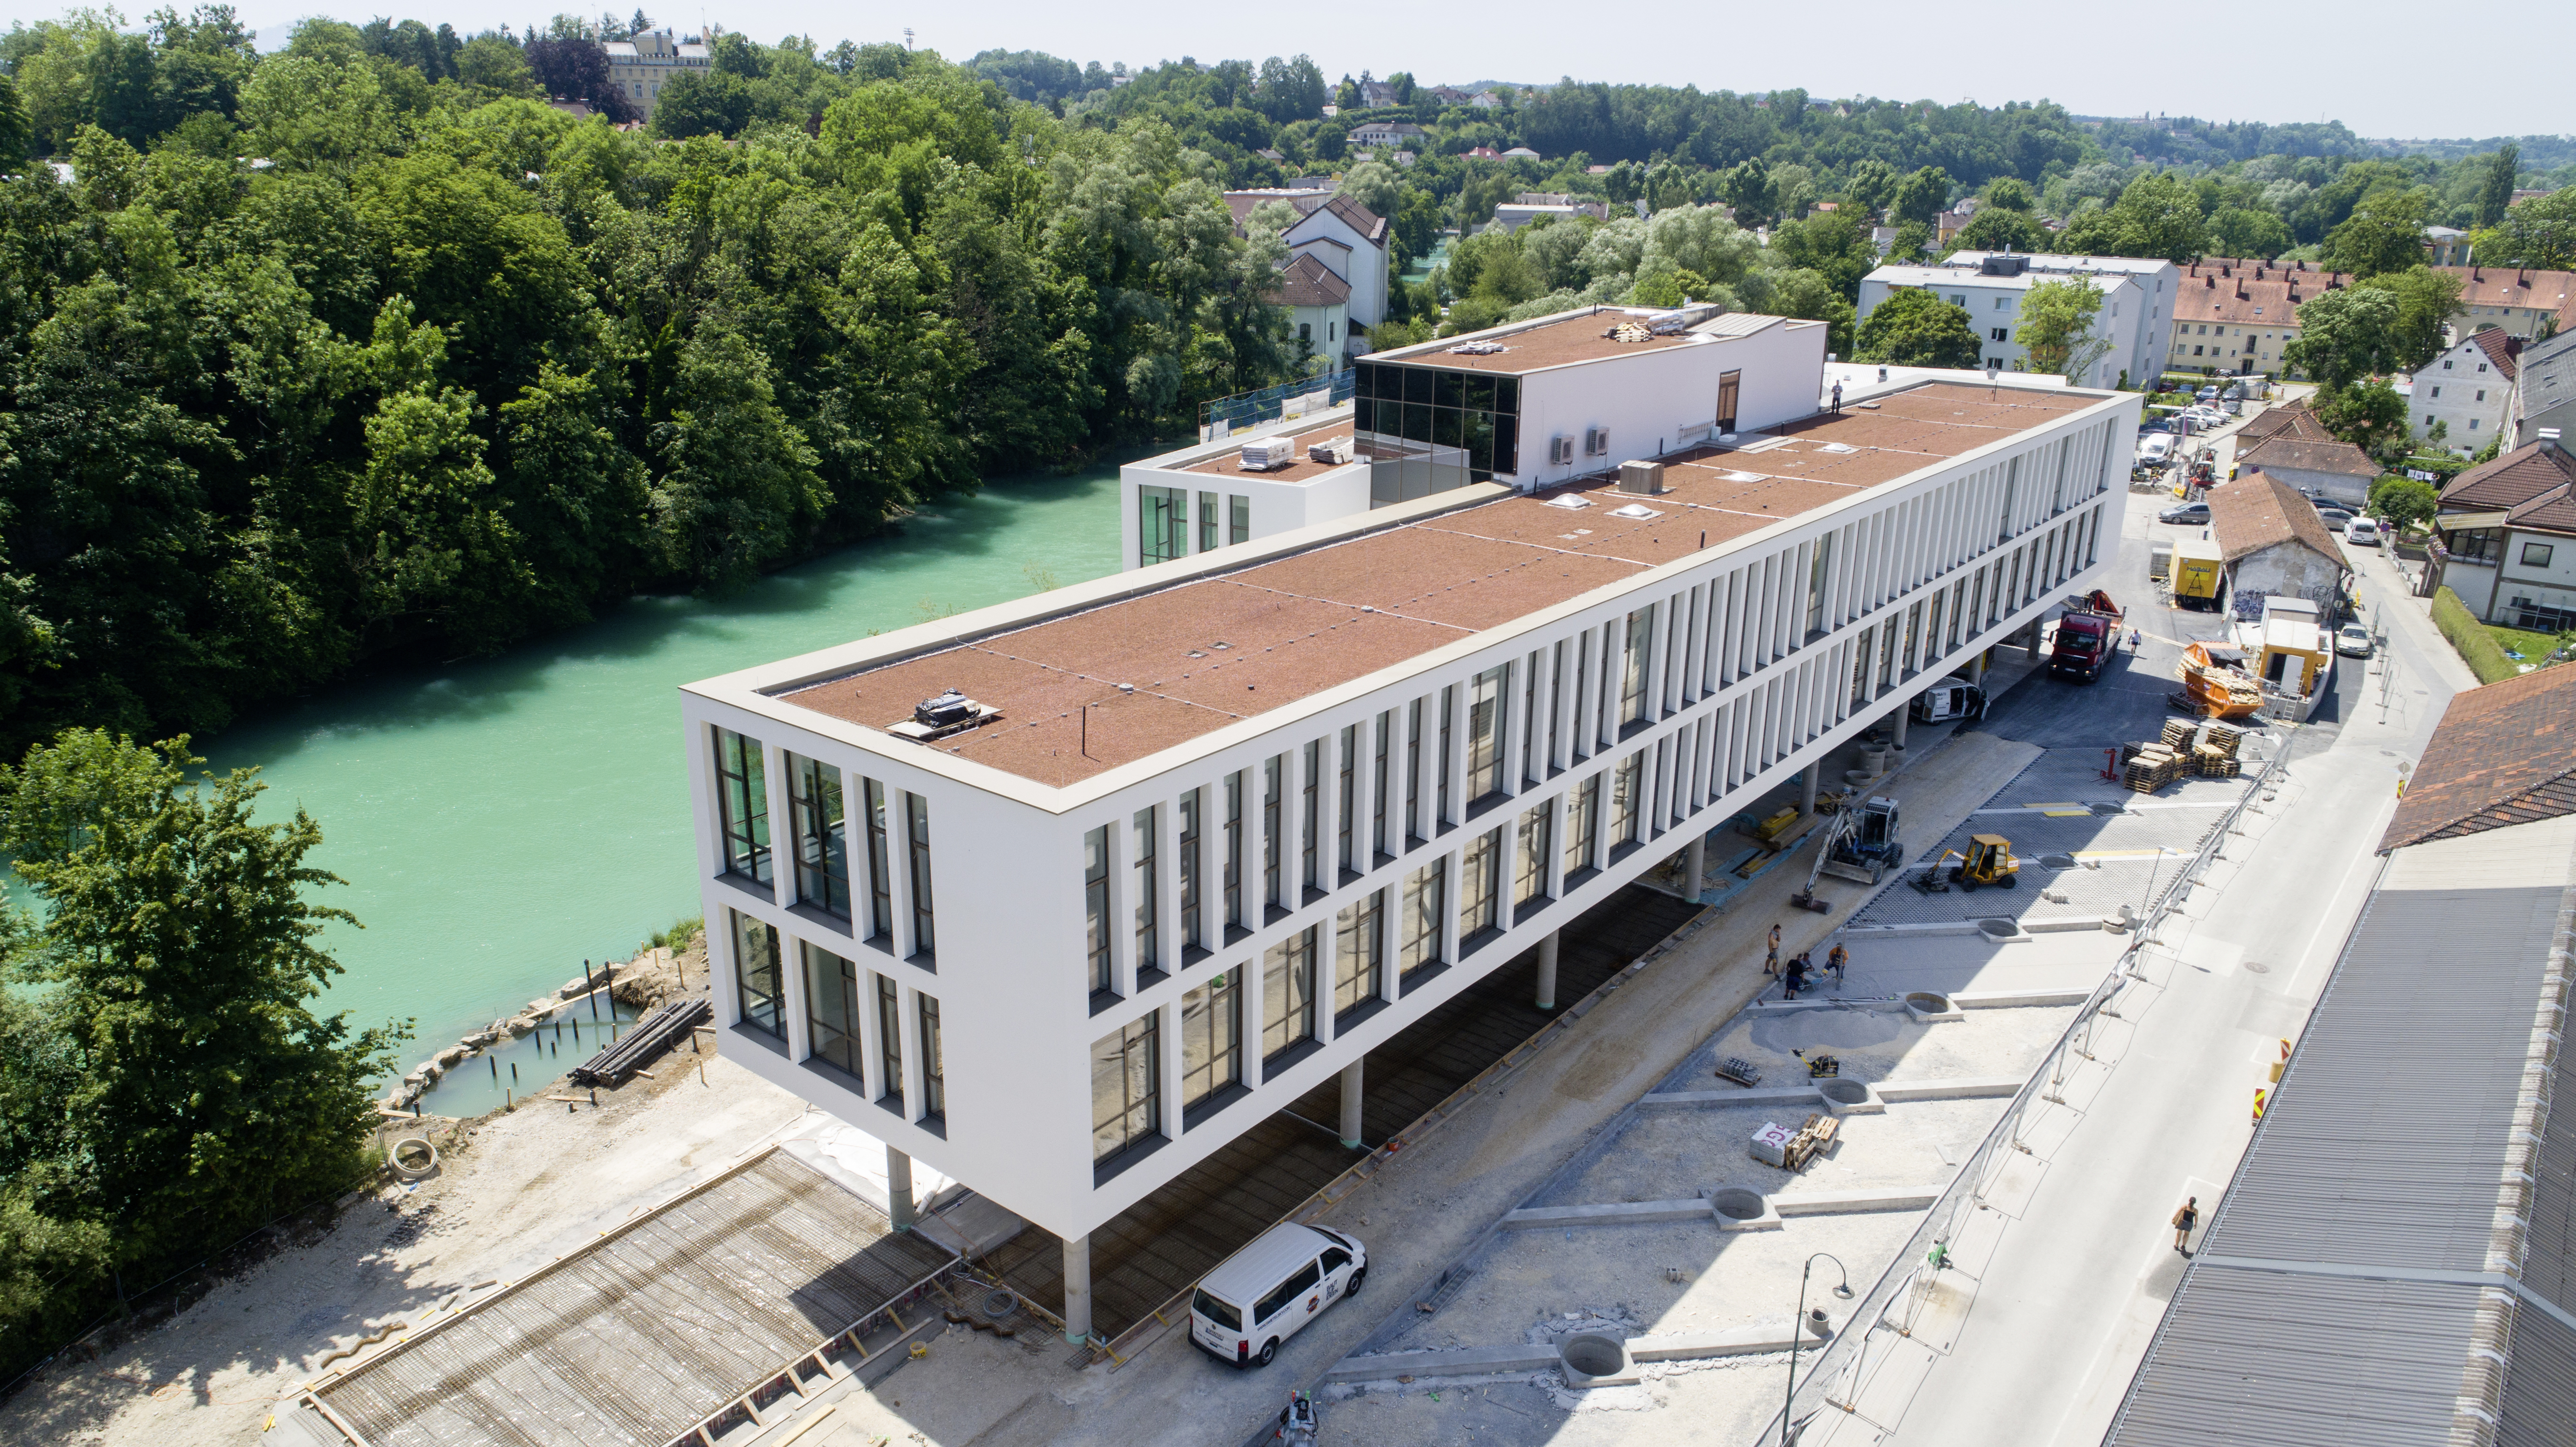 Campusgebäude der Fachhochschule, Steyr - Bygningskonstruksjon